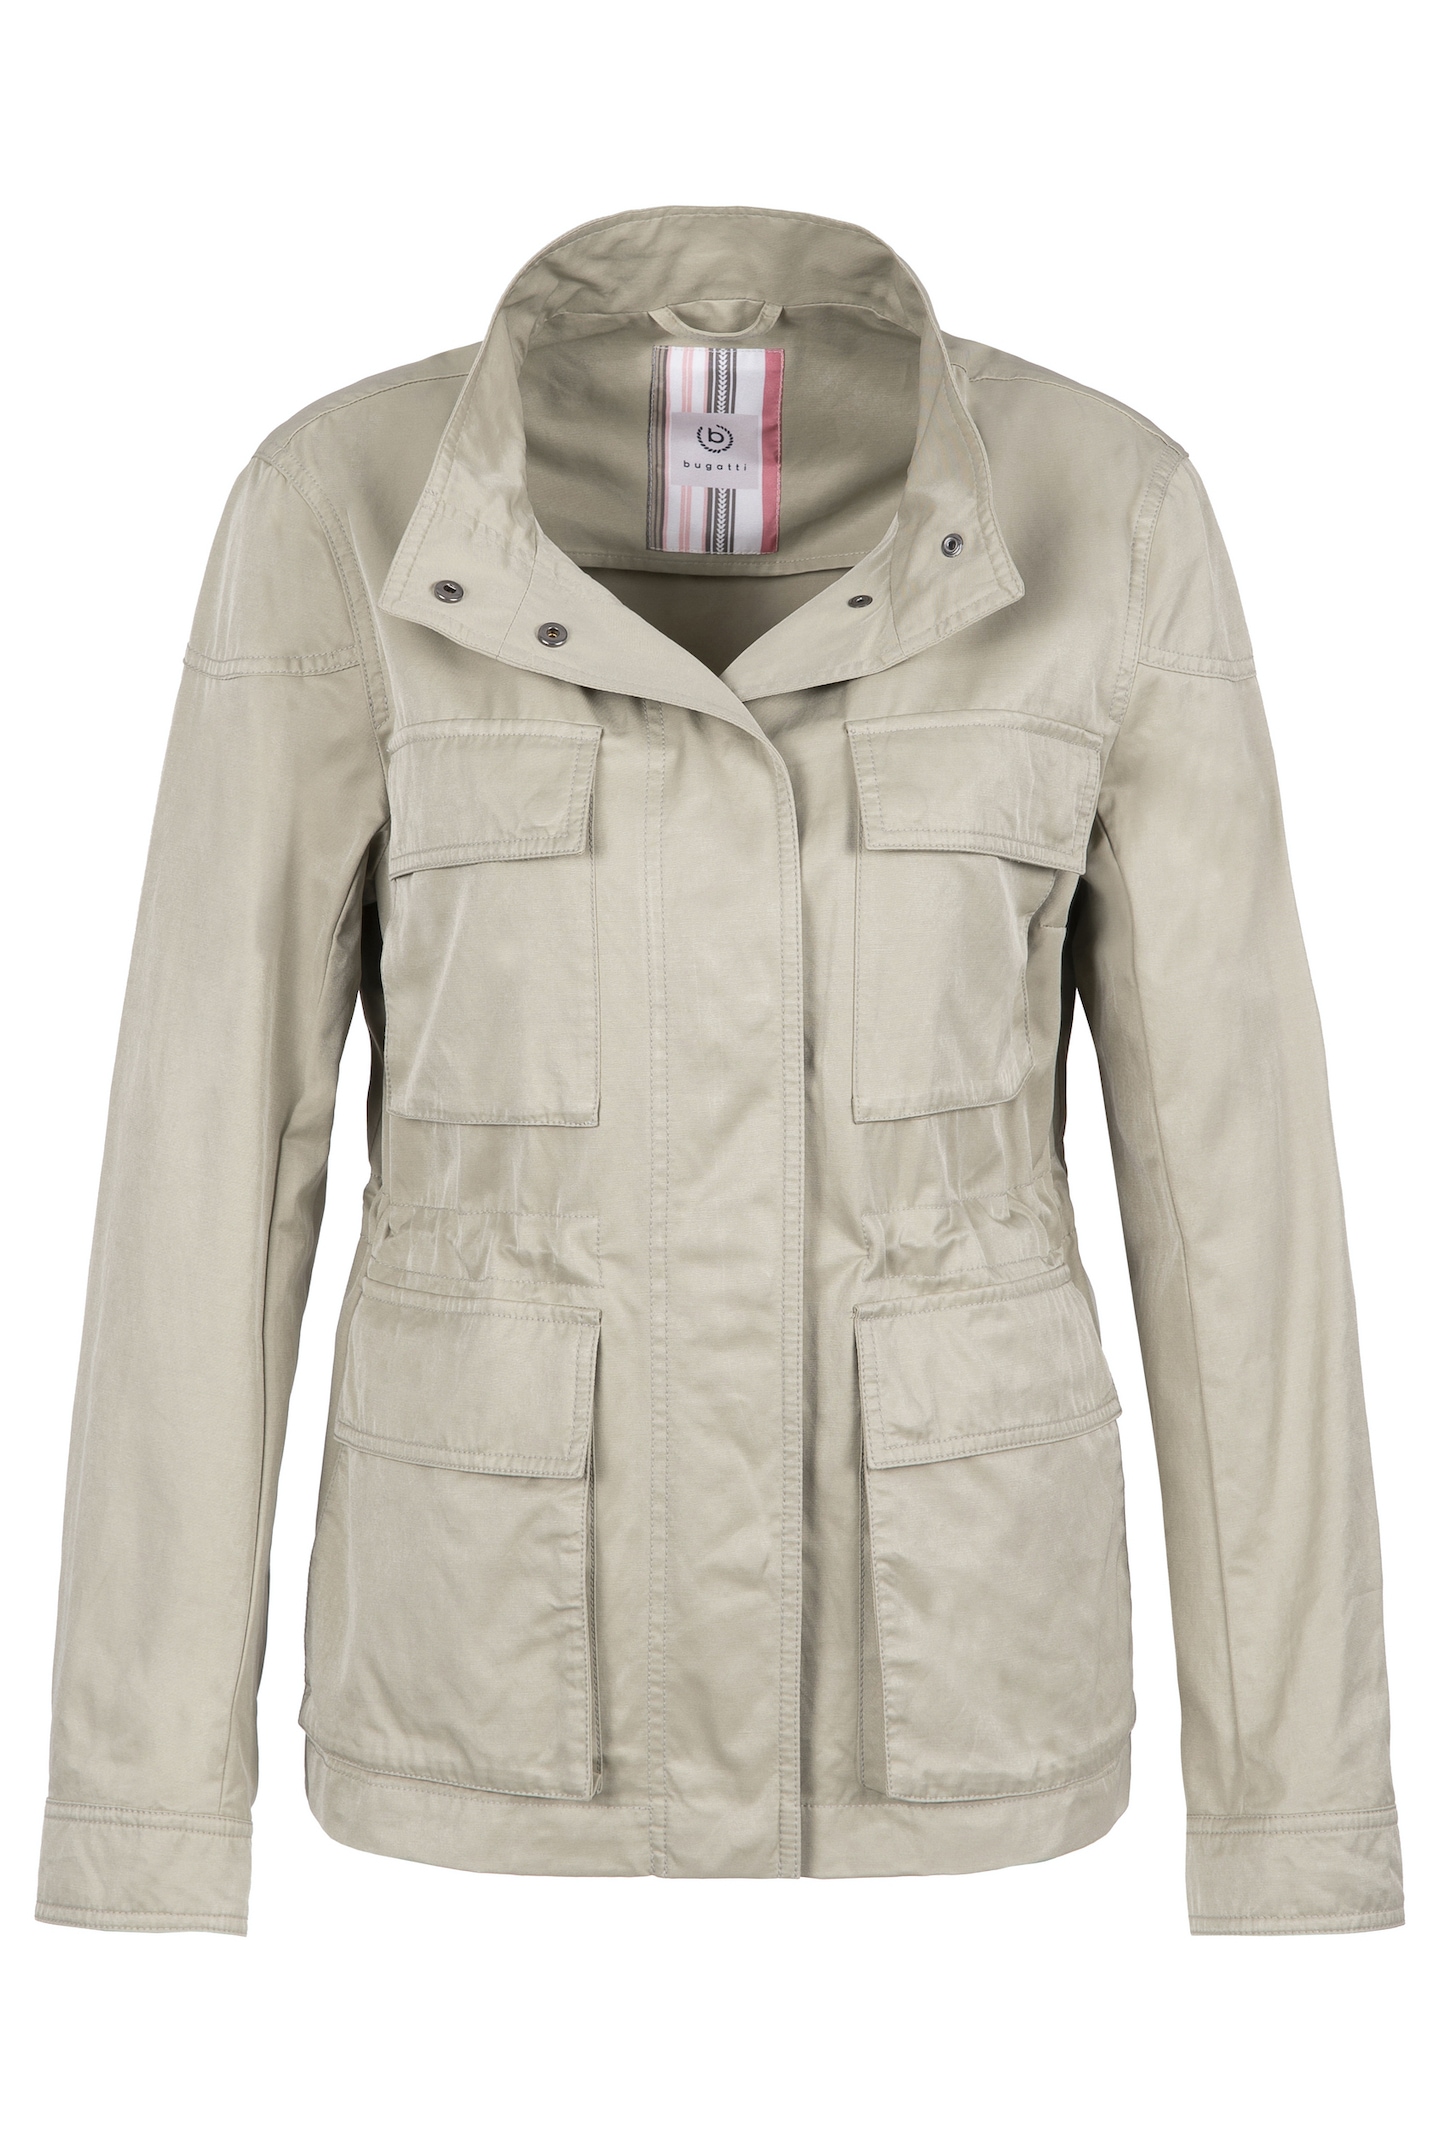 bugatti Fieldjacket, ohne Kapuze, aus einer gewaschenen, soften Baumwollqualität